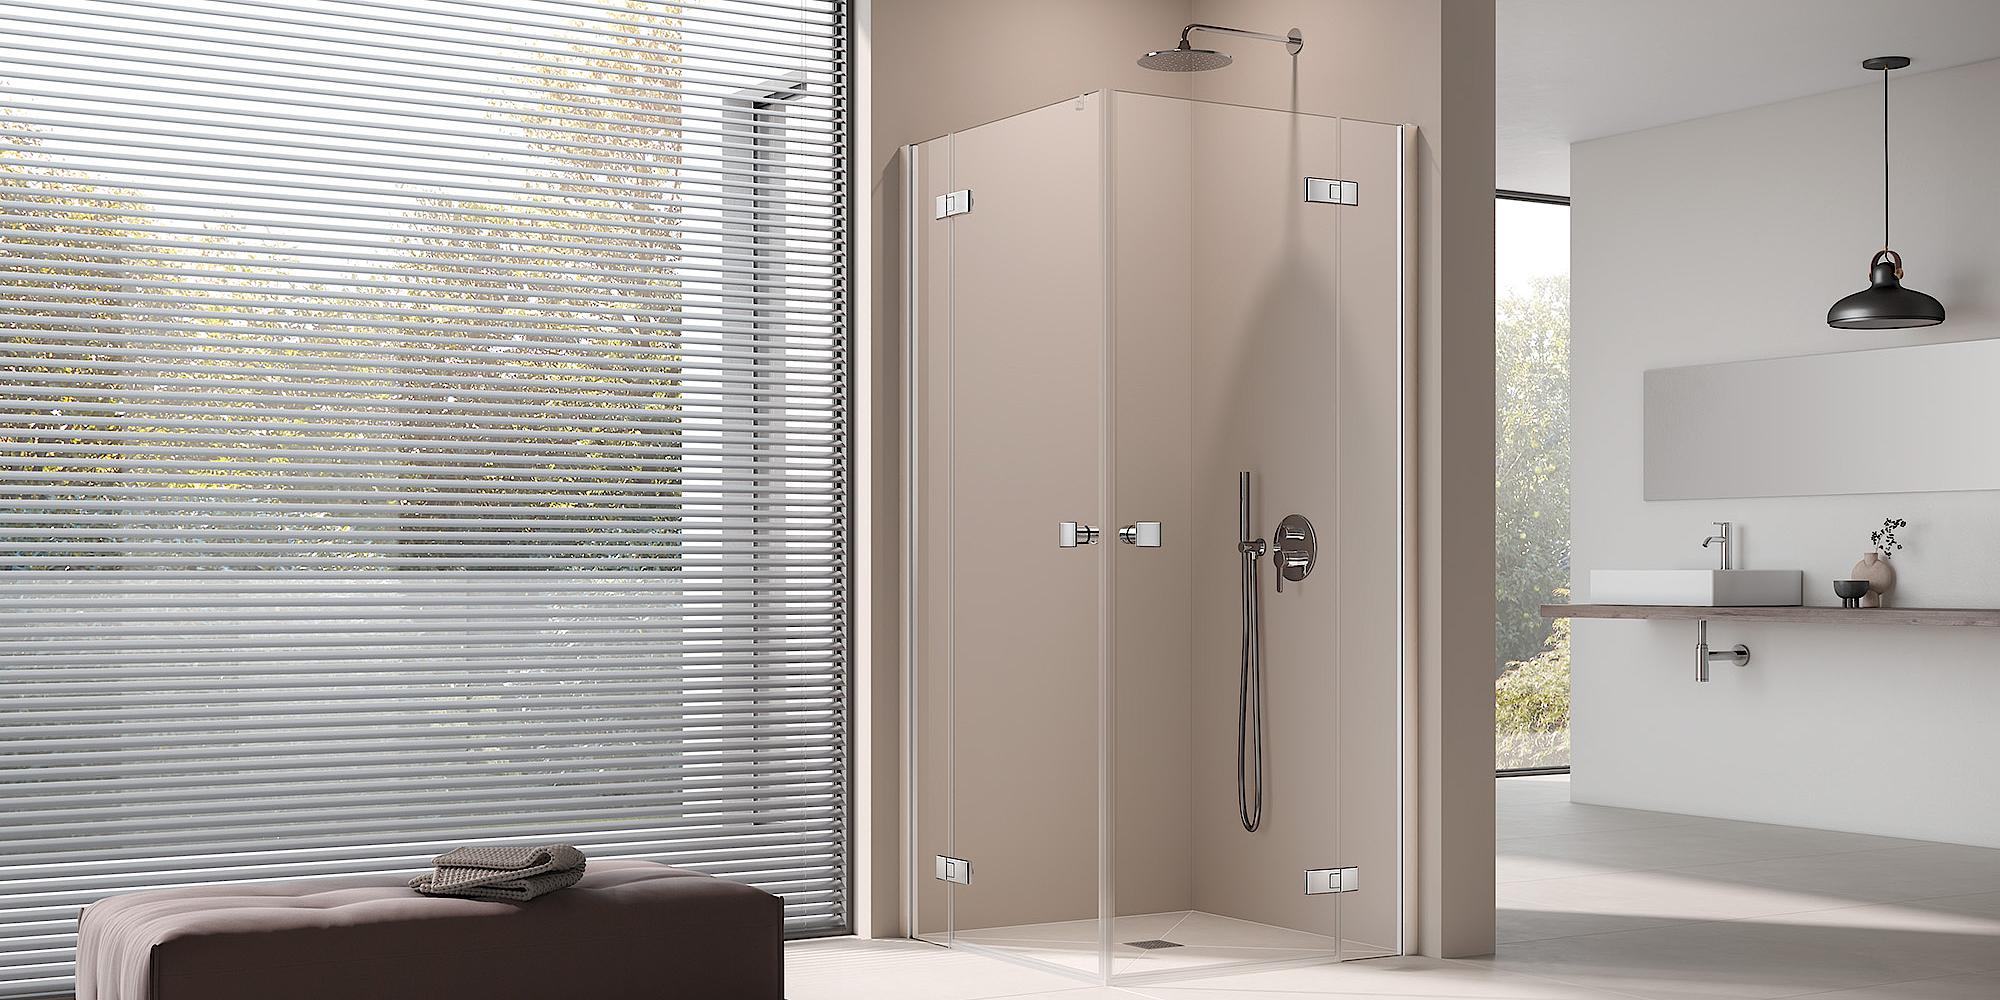 Kabina prysznicowa Kermi MENA z wejściem narożnym 2-częściowa (drzwi wahadłowe z polami stałymi) – 1 połowa z profilem przyściennym